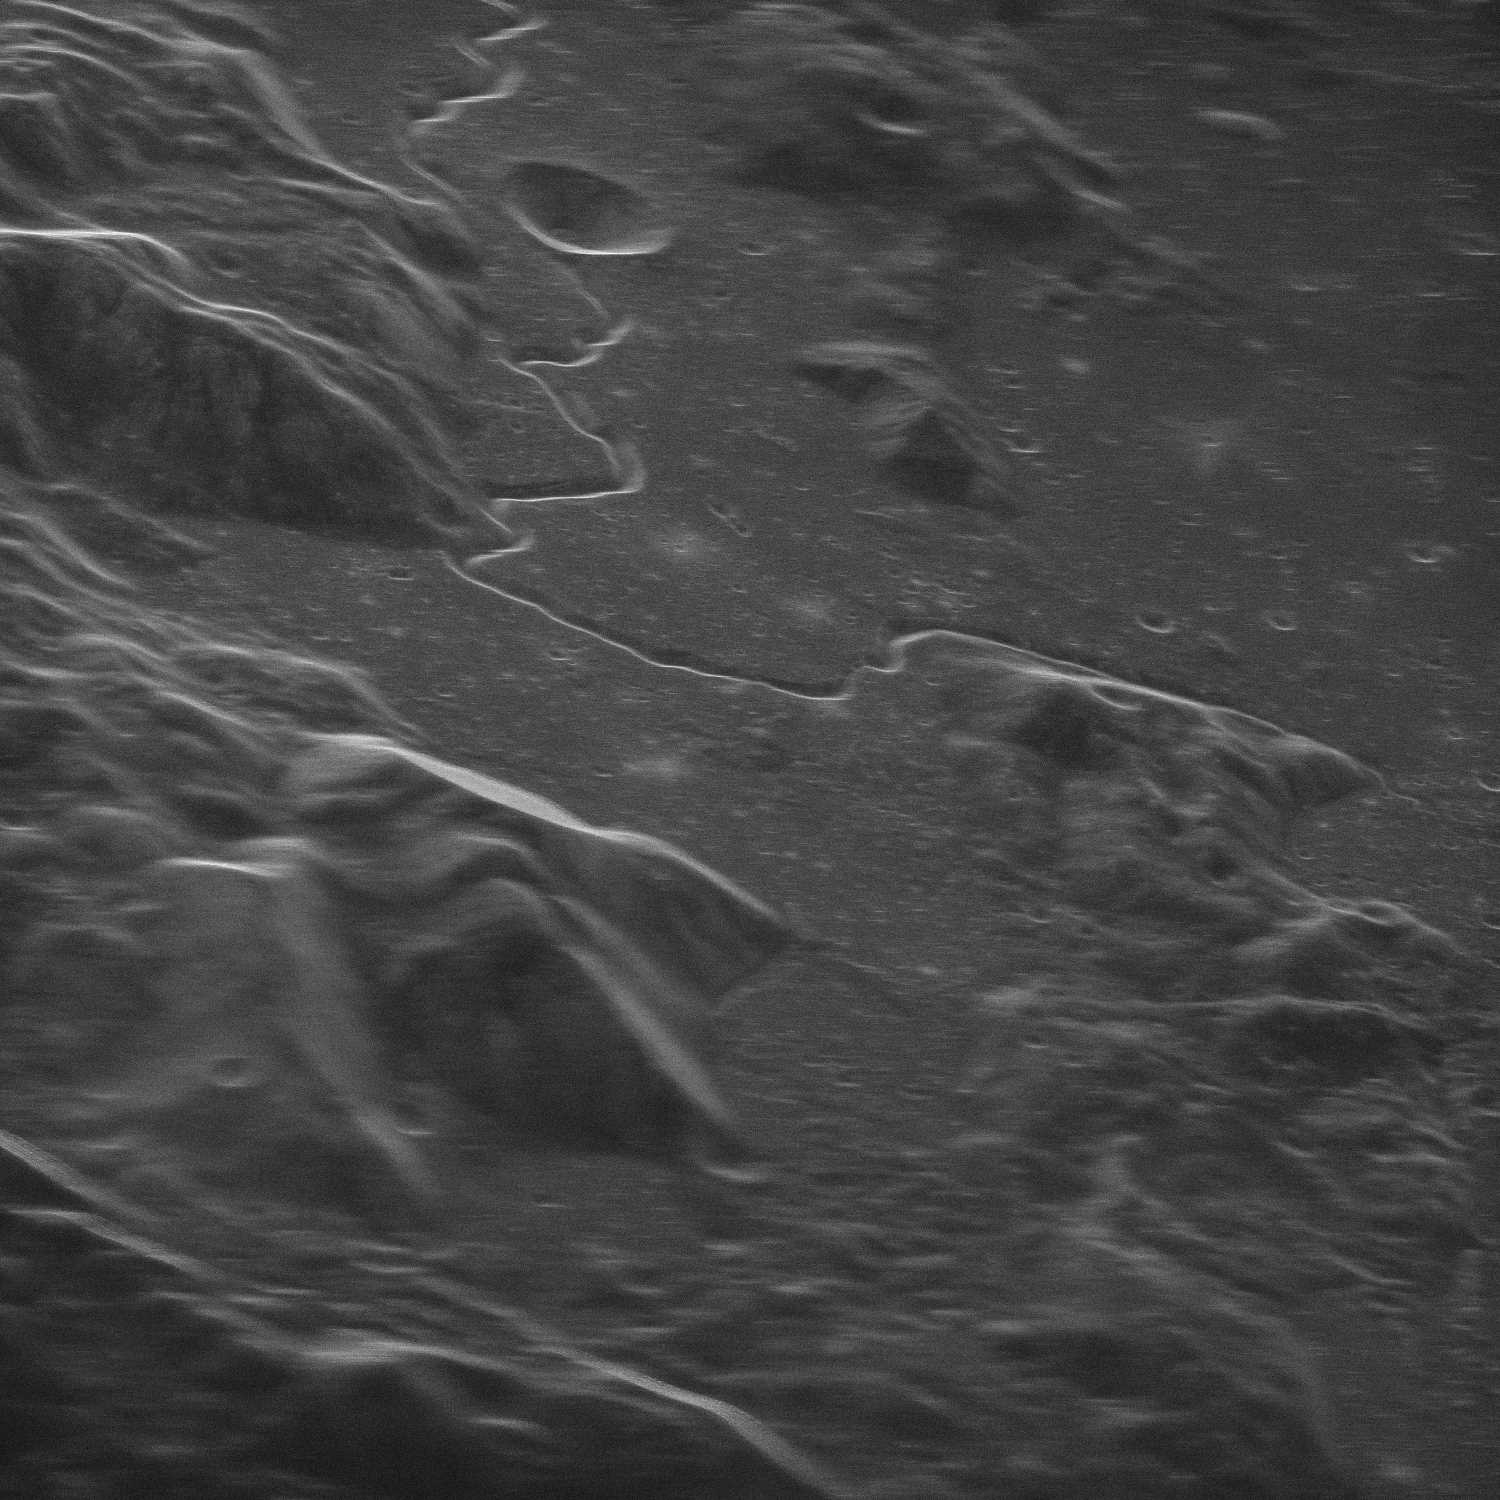 Радіолокаційне зображення місця висадки «Аполлона-15» в 1971 році. Висока роздільна здатність дозволяє побачити структури завдовжки лише у 5 метрів. Так, діаметр кратера у верхній частині зображення складає 6 метрів. Змієподібна структура називається Хадлі Рілл (Hadley Rille). Цей канал утворився в результаті давньої вулканічної діяльності та ймовірно, насправді є обваленою лавовою трубкою. NRAO/GBO/Raytheon/NSF/AUI